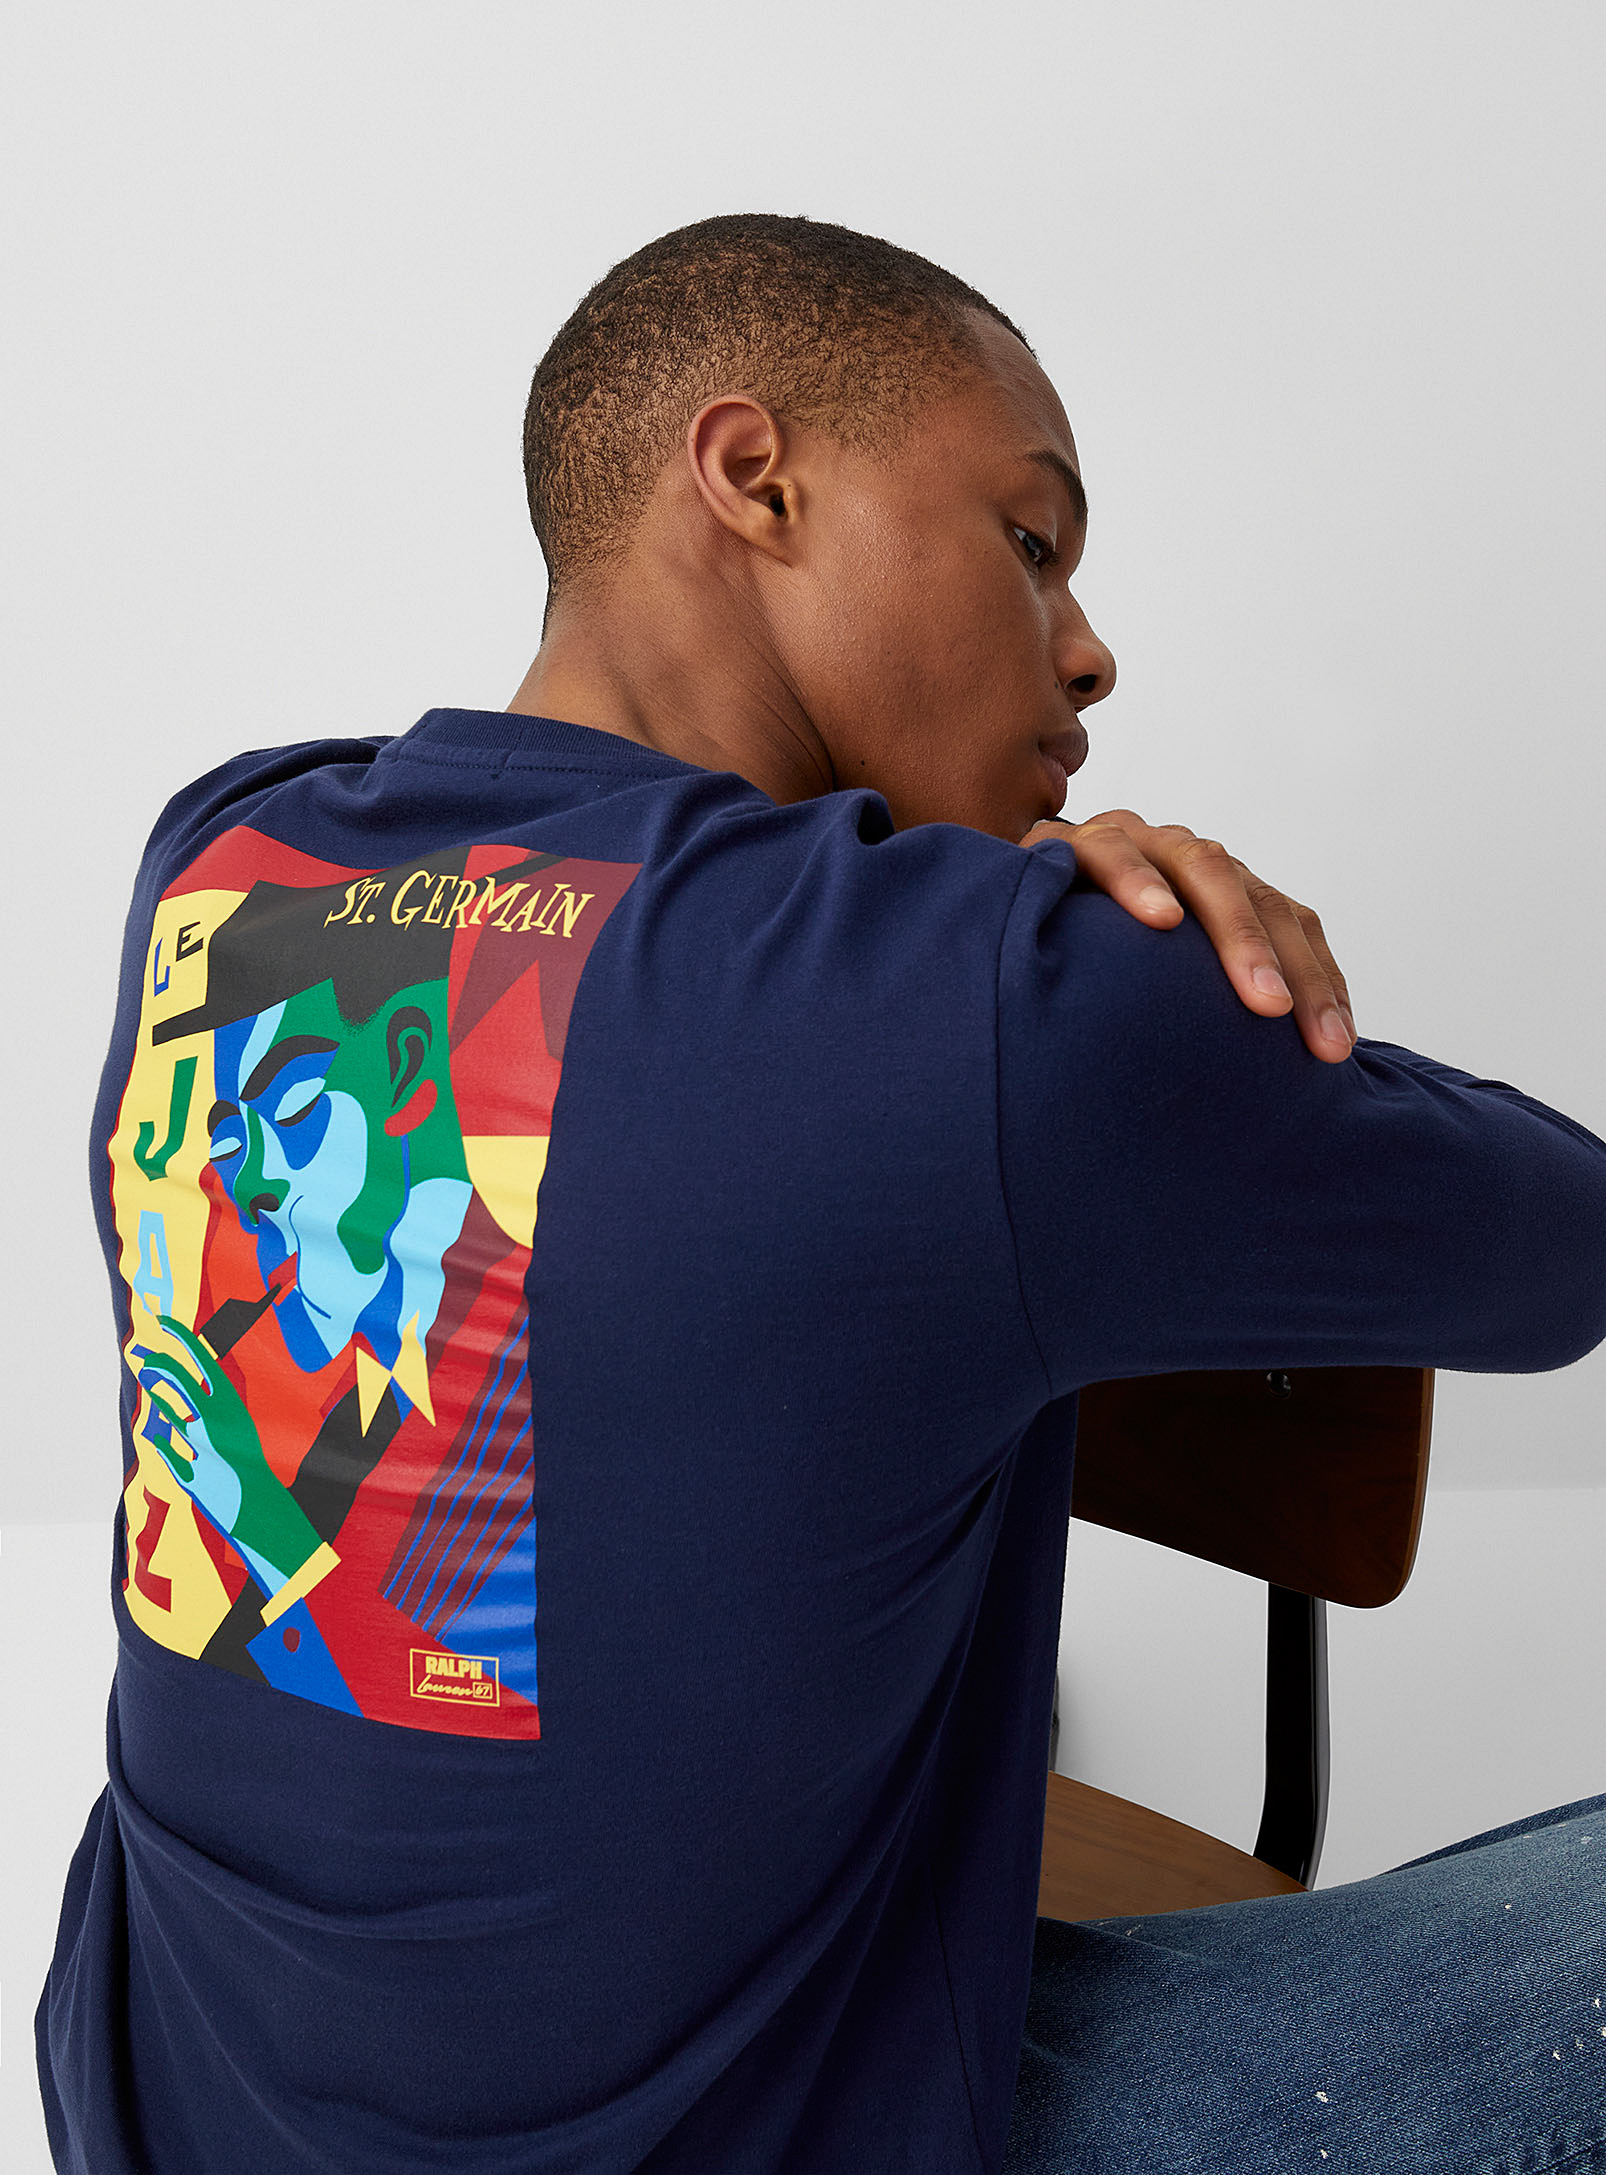 Polo Shirt Ralph Lauren - Men's St. Germain T-shirt